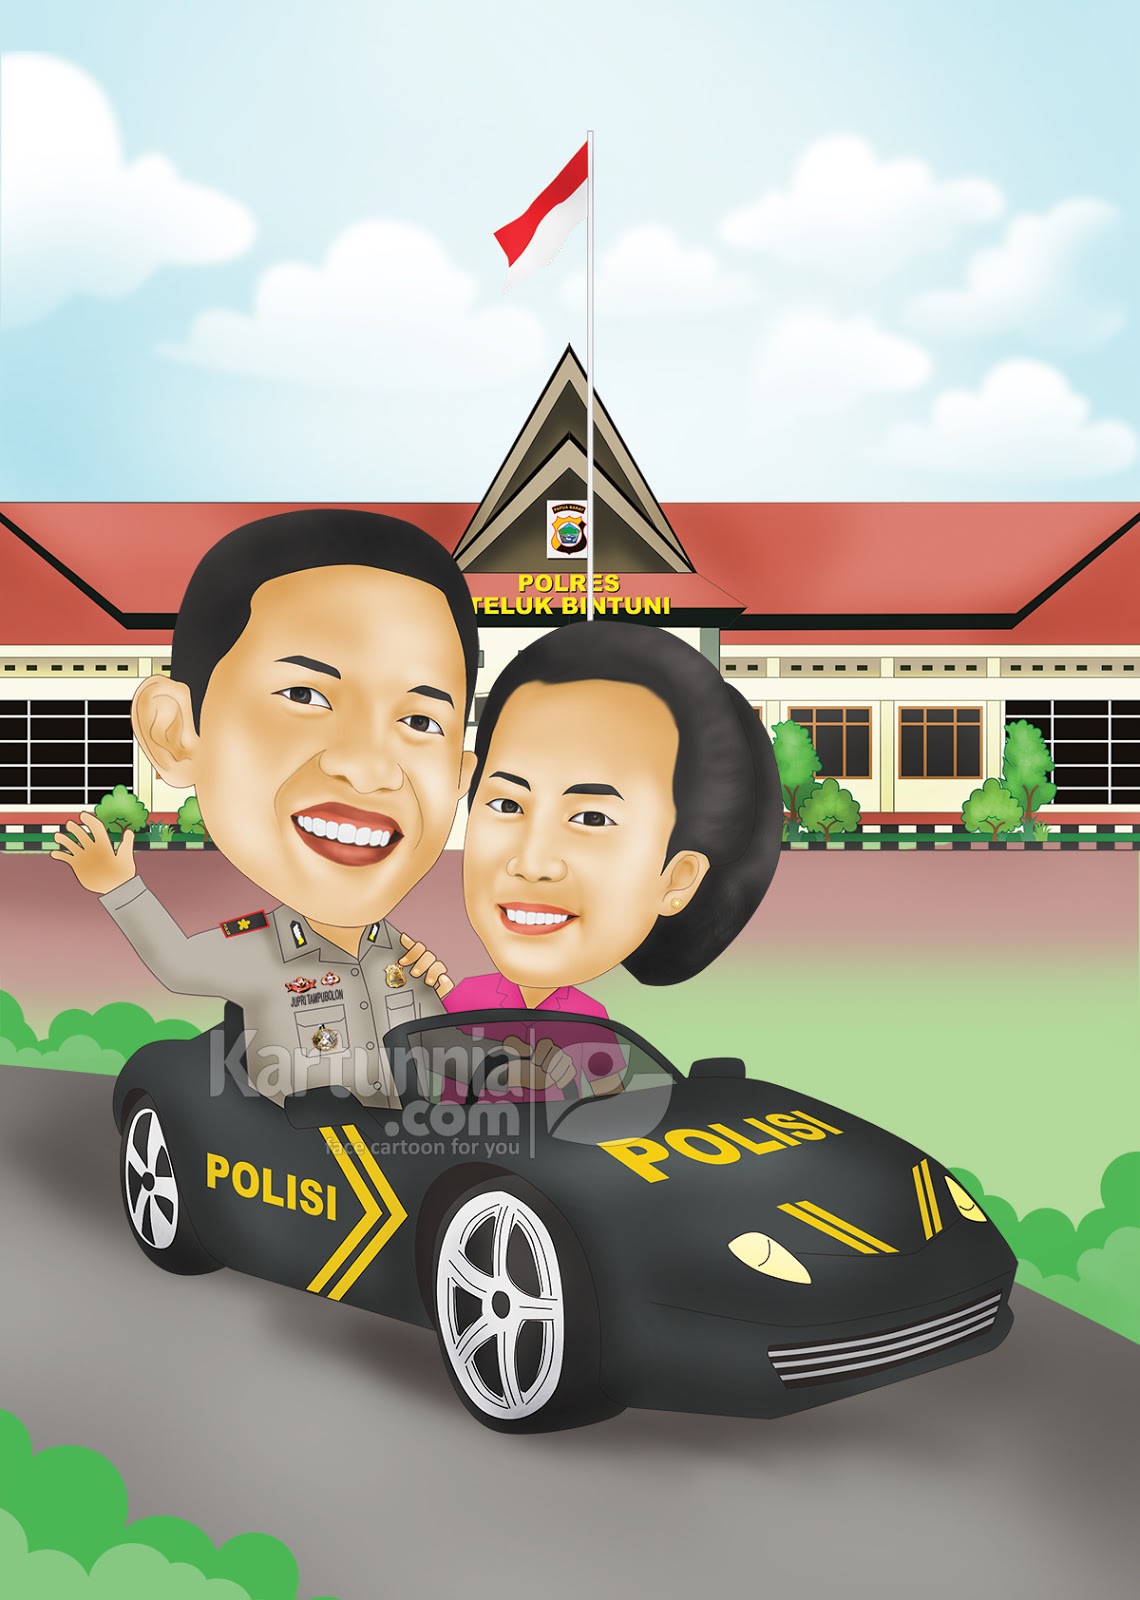 Karikatur Polisi Naik Mobil - Kartunnia.com